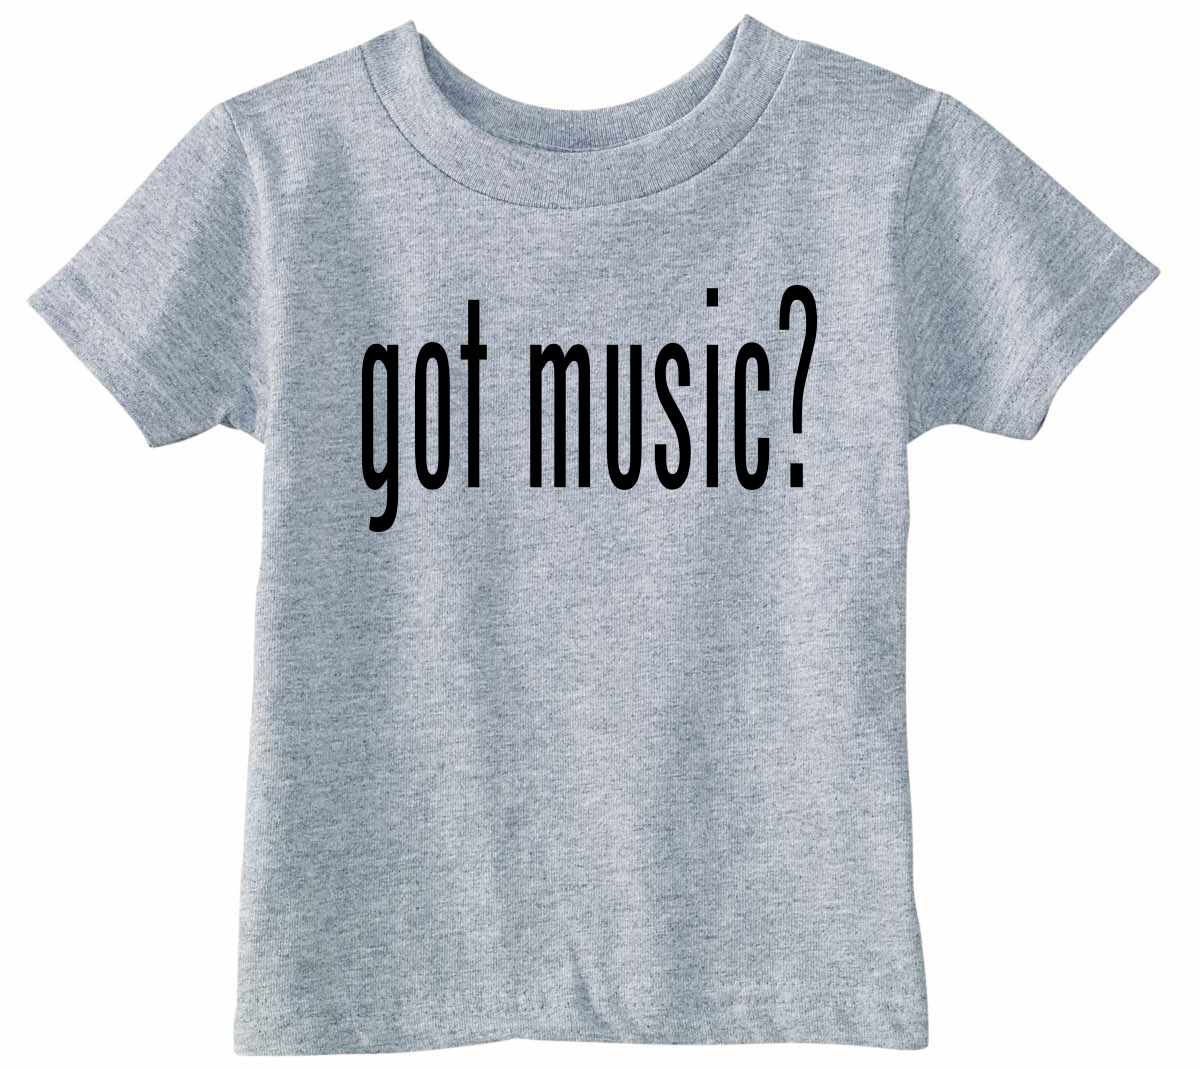 Got Music? on Infant-Toddler T-Shirt (#840-7)